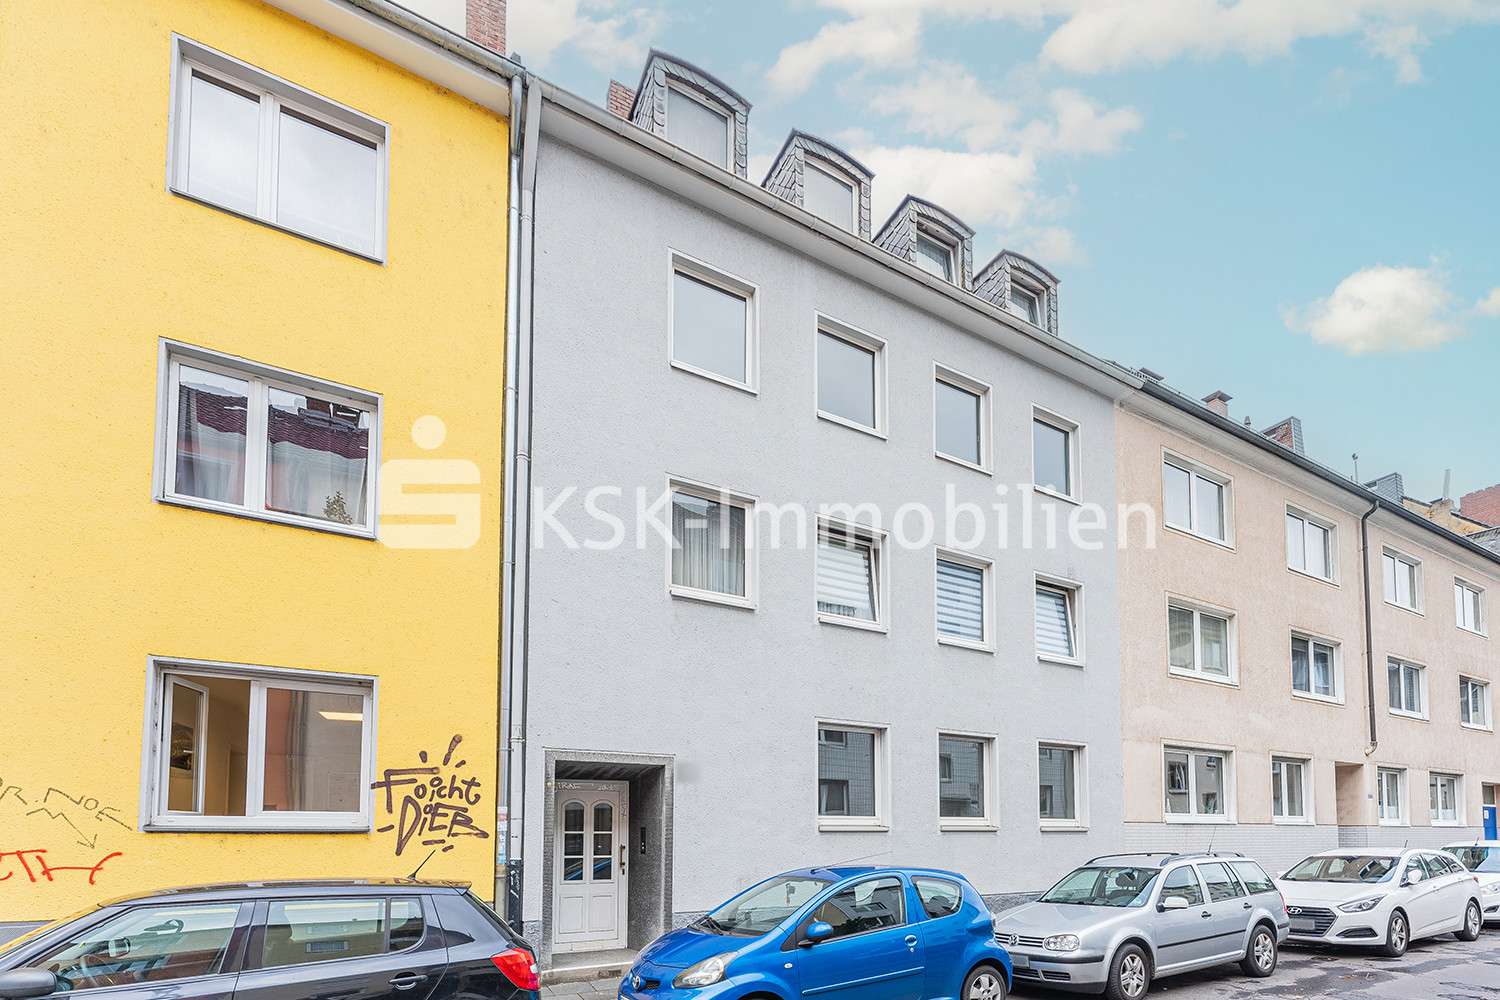 112445 Außenansicht - Mehrfamilienhaus in 51063 Köln mit 294m² als Kapitalanlage günstig kaufen